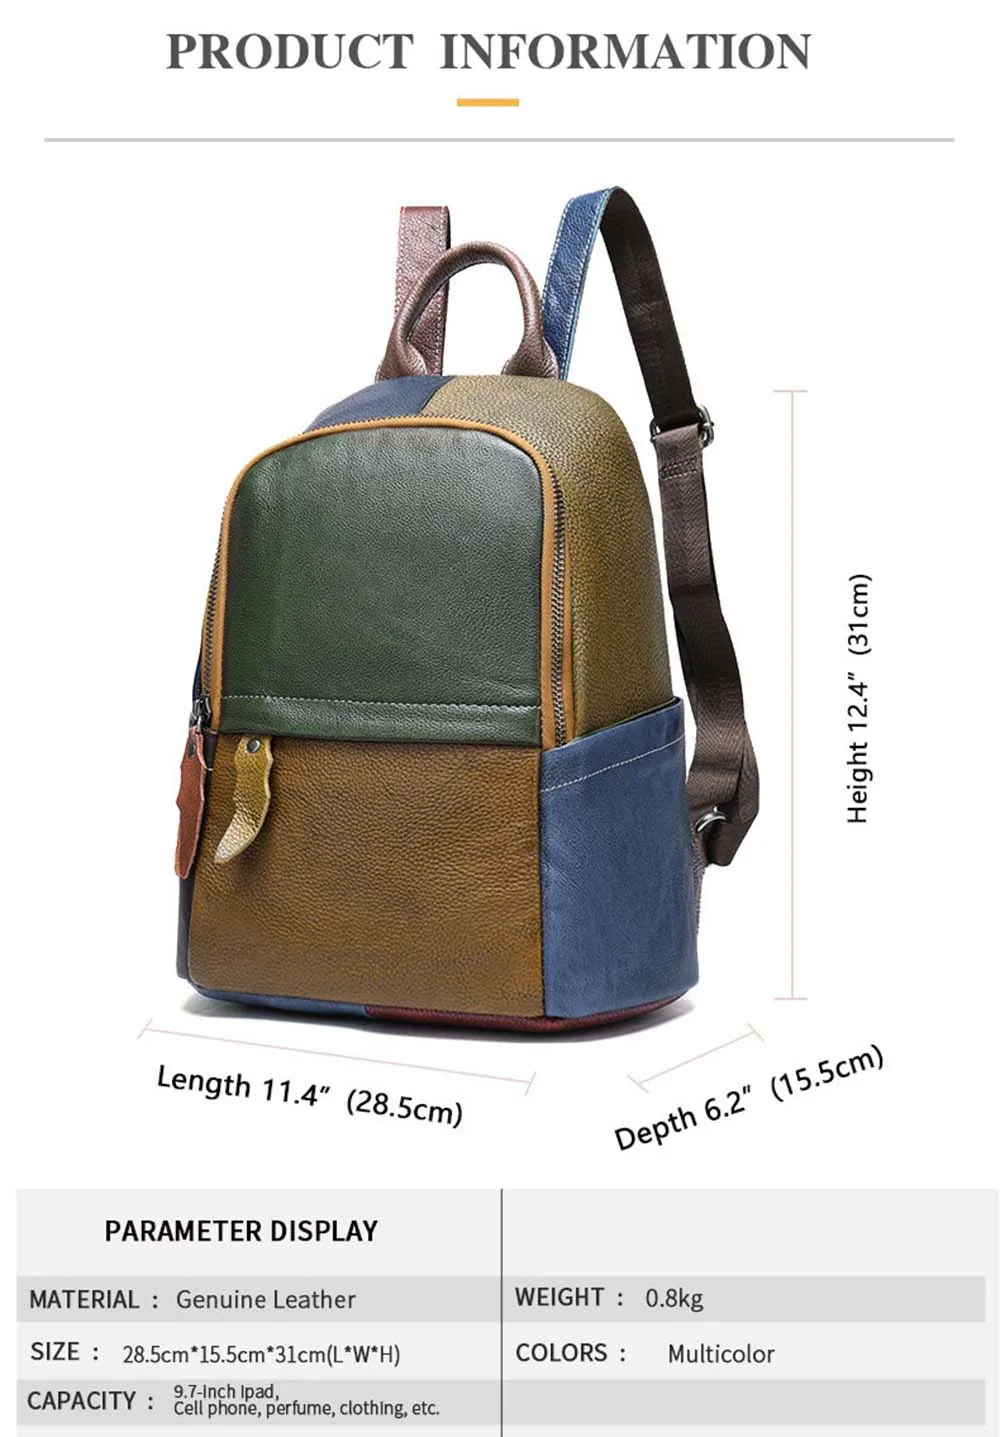 Lukegear рюкзак из натуральной кожи, унисекс, лоскутные рюкзаки, модный кошелек, школьные сумки, винтажный стиль, прочный дизайн